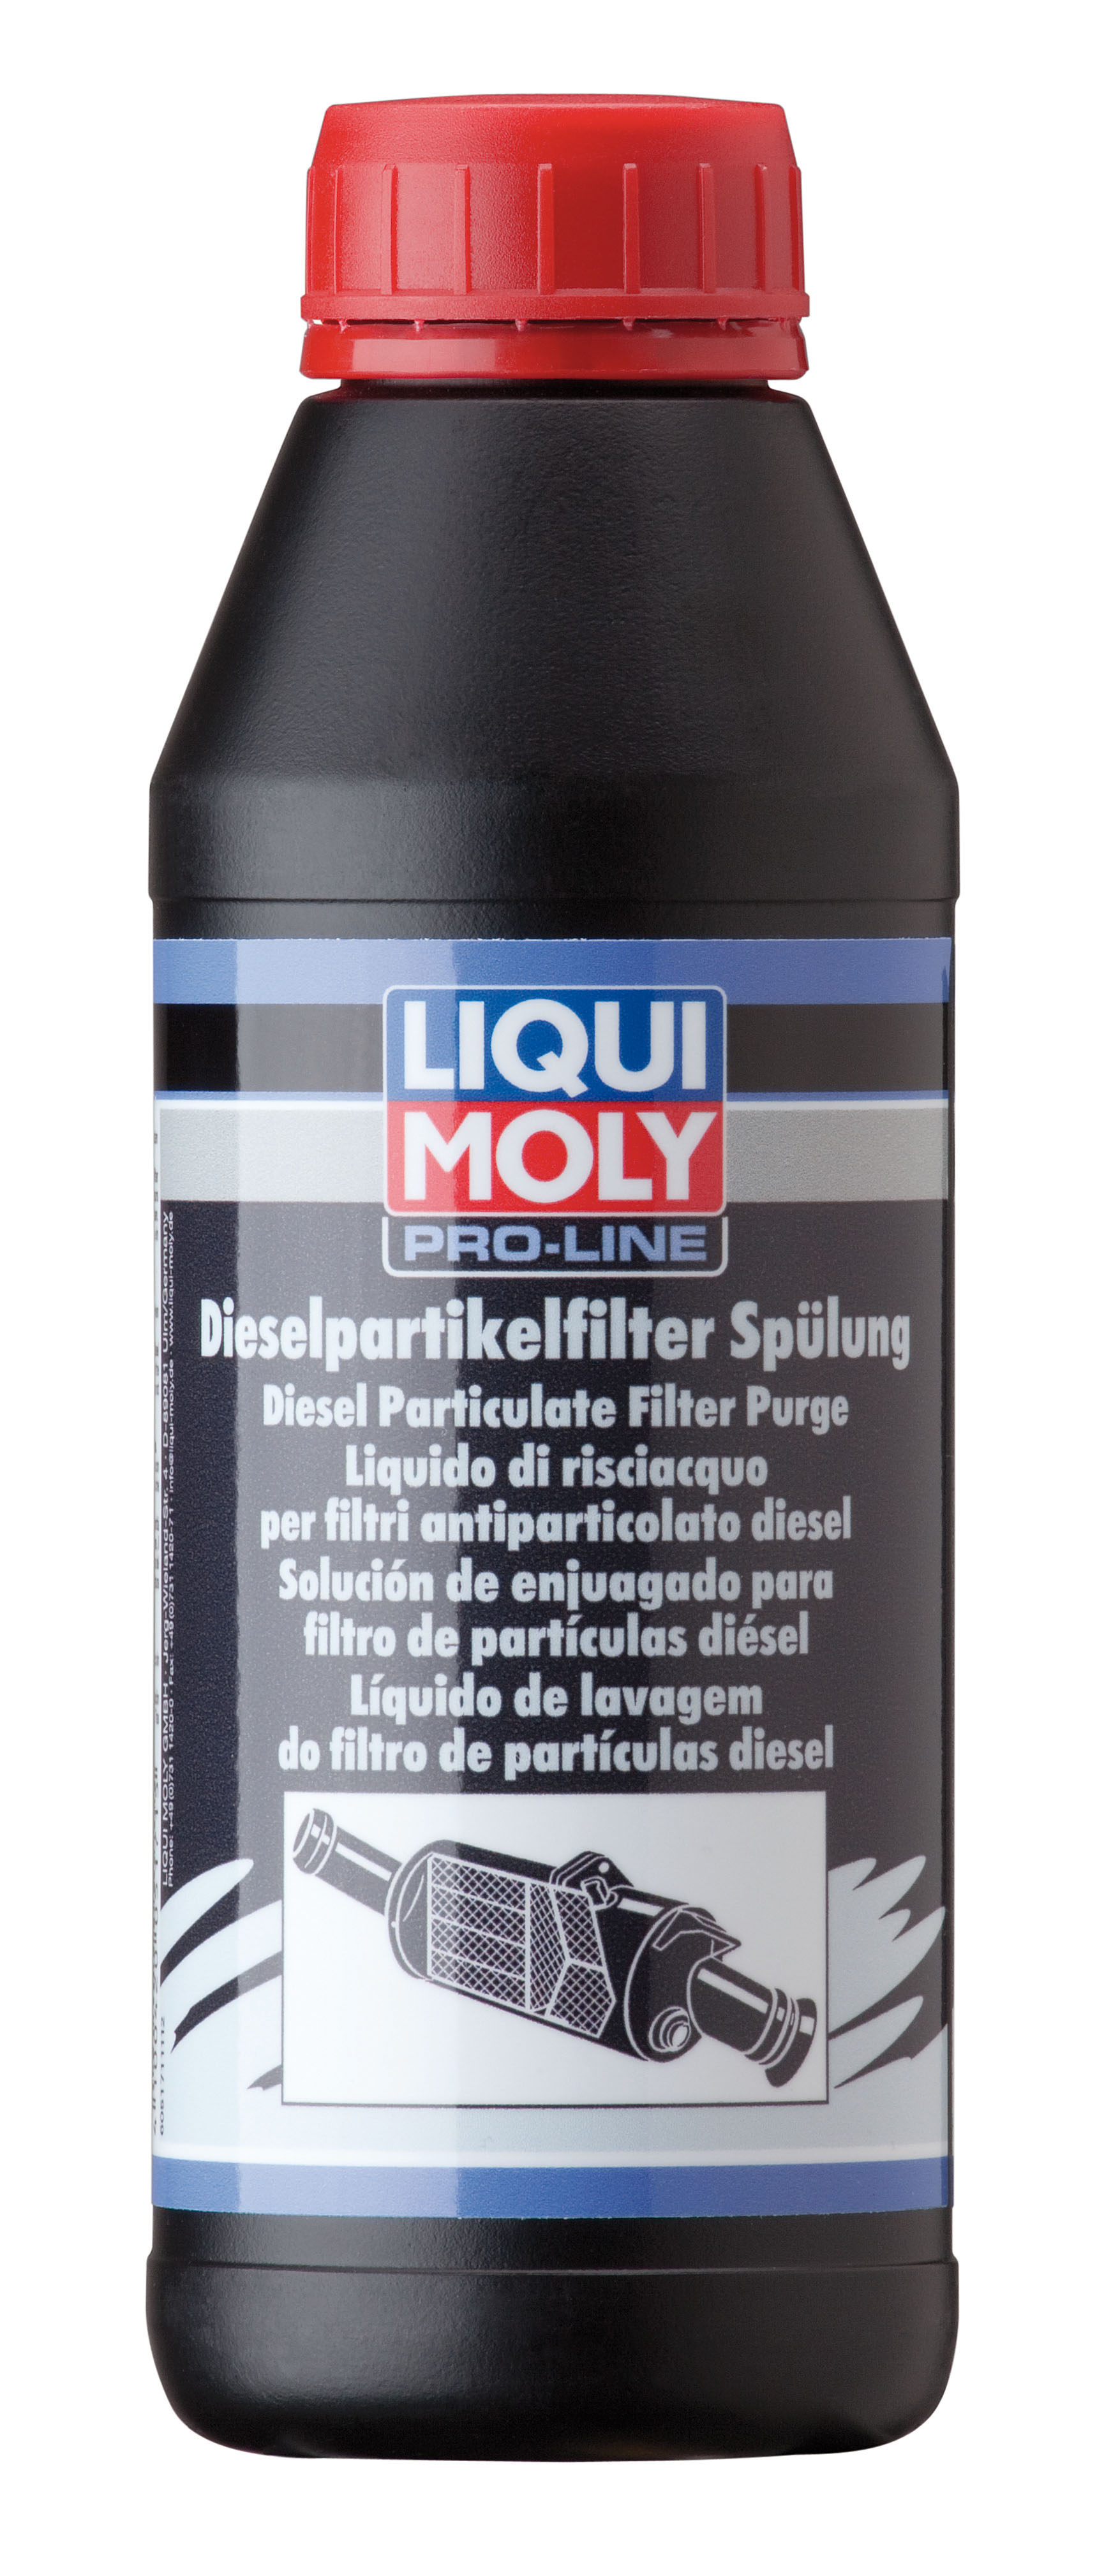 Профессиональная финишняя промывка дизельного сажевого фильтра Liqui Moly Pro-Line Diesel Partikelfilter Spulung